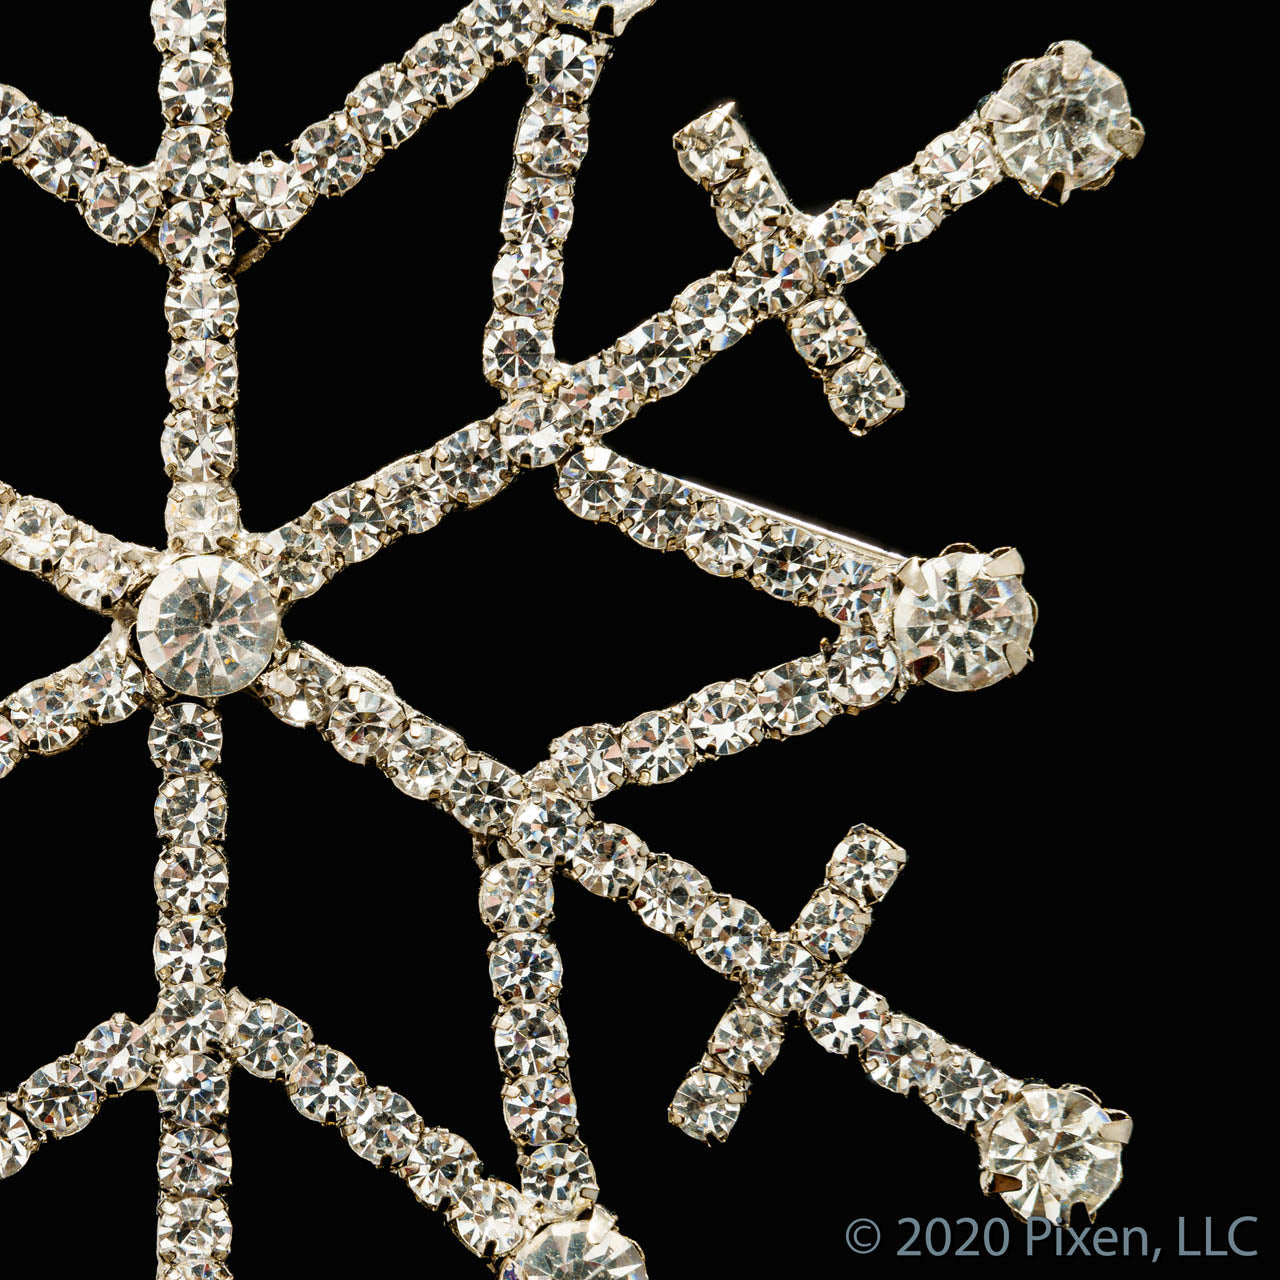 Glow Snowflake Christmas Ornament by Pixen